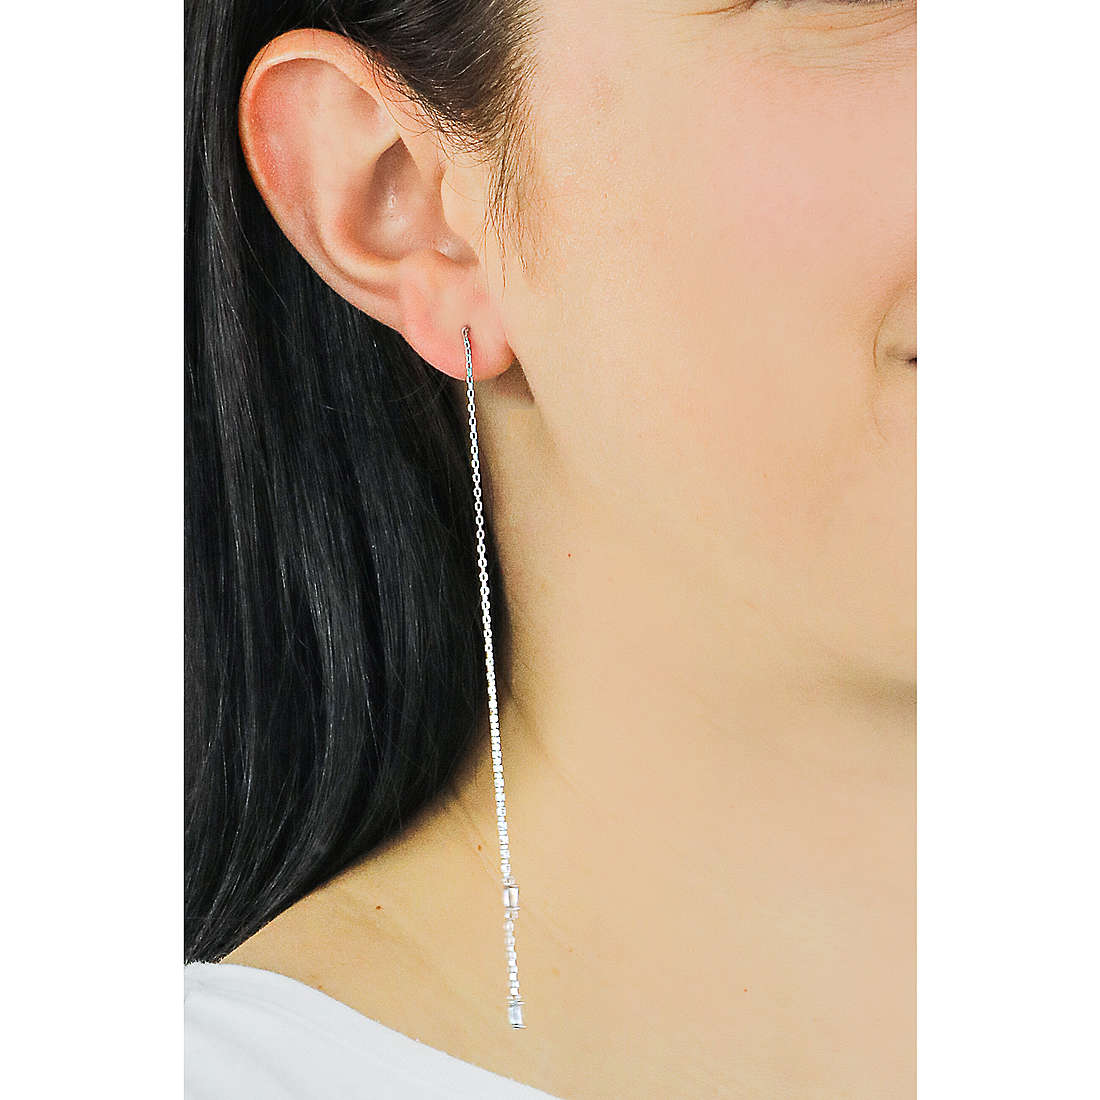 Ania Haie earrings Glow Getter woman E018-02H wearing